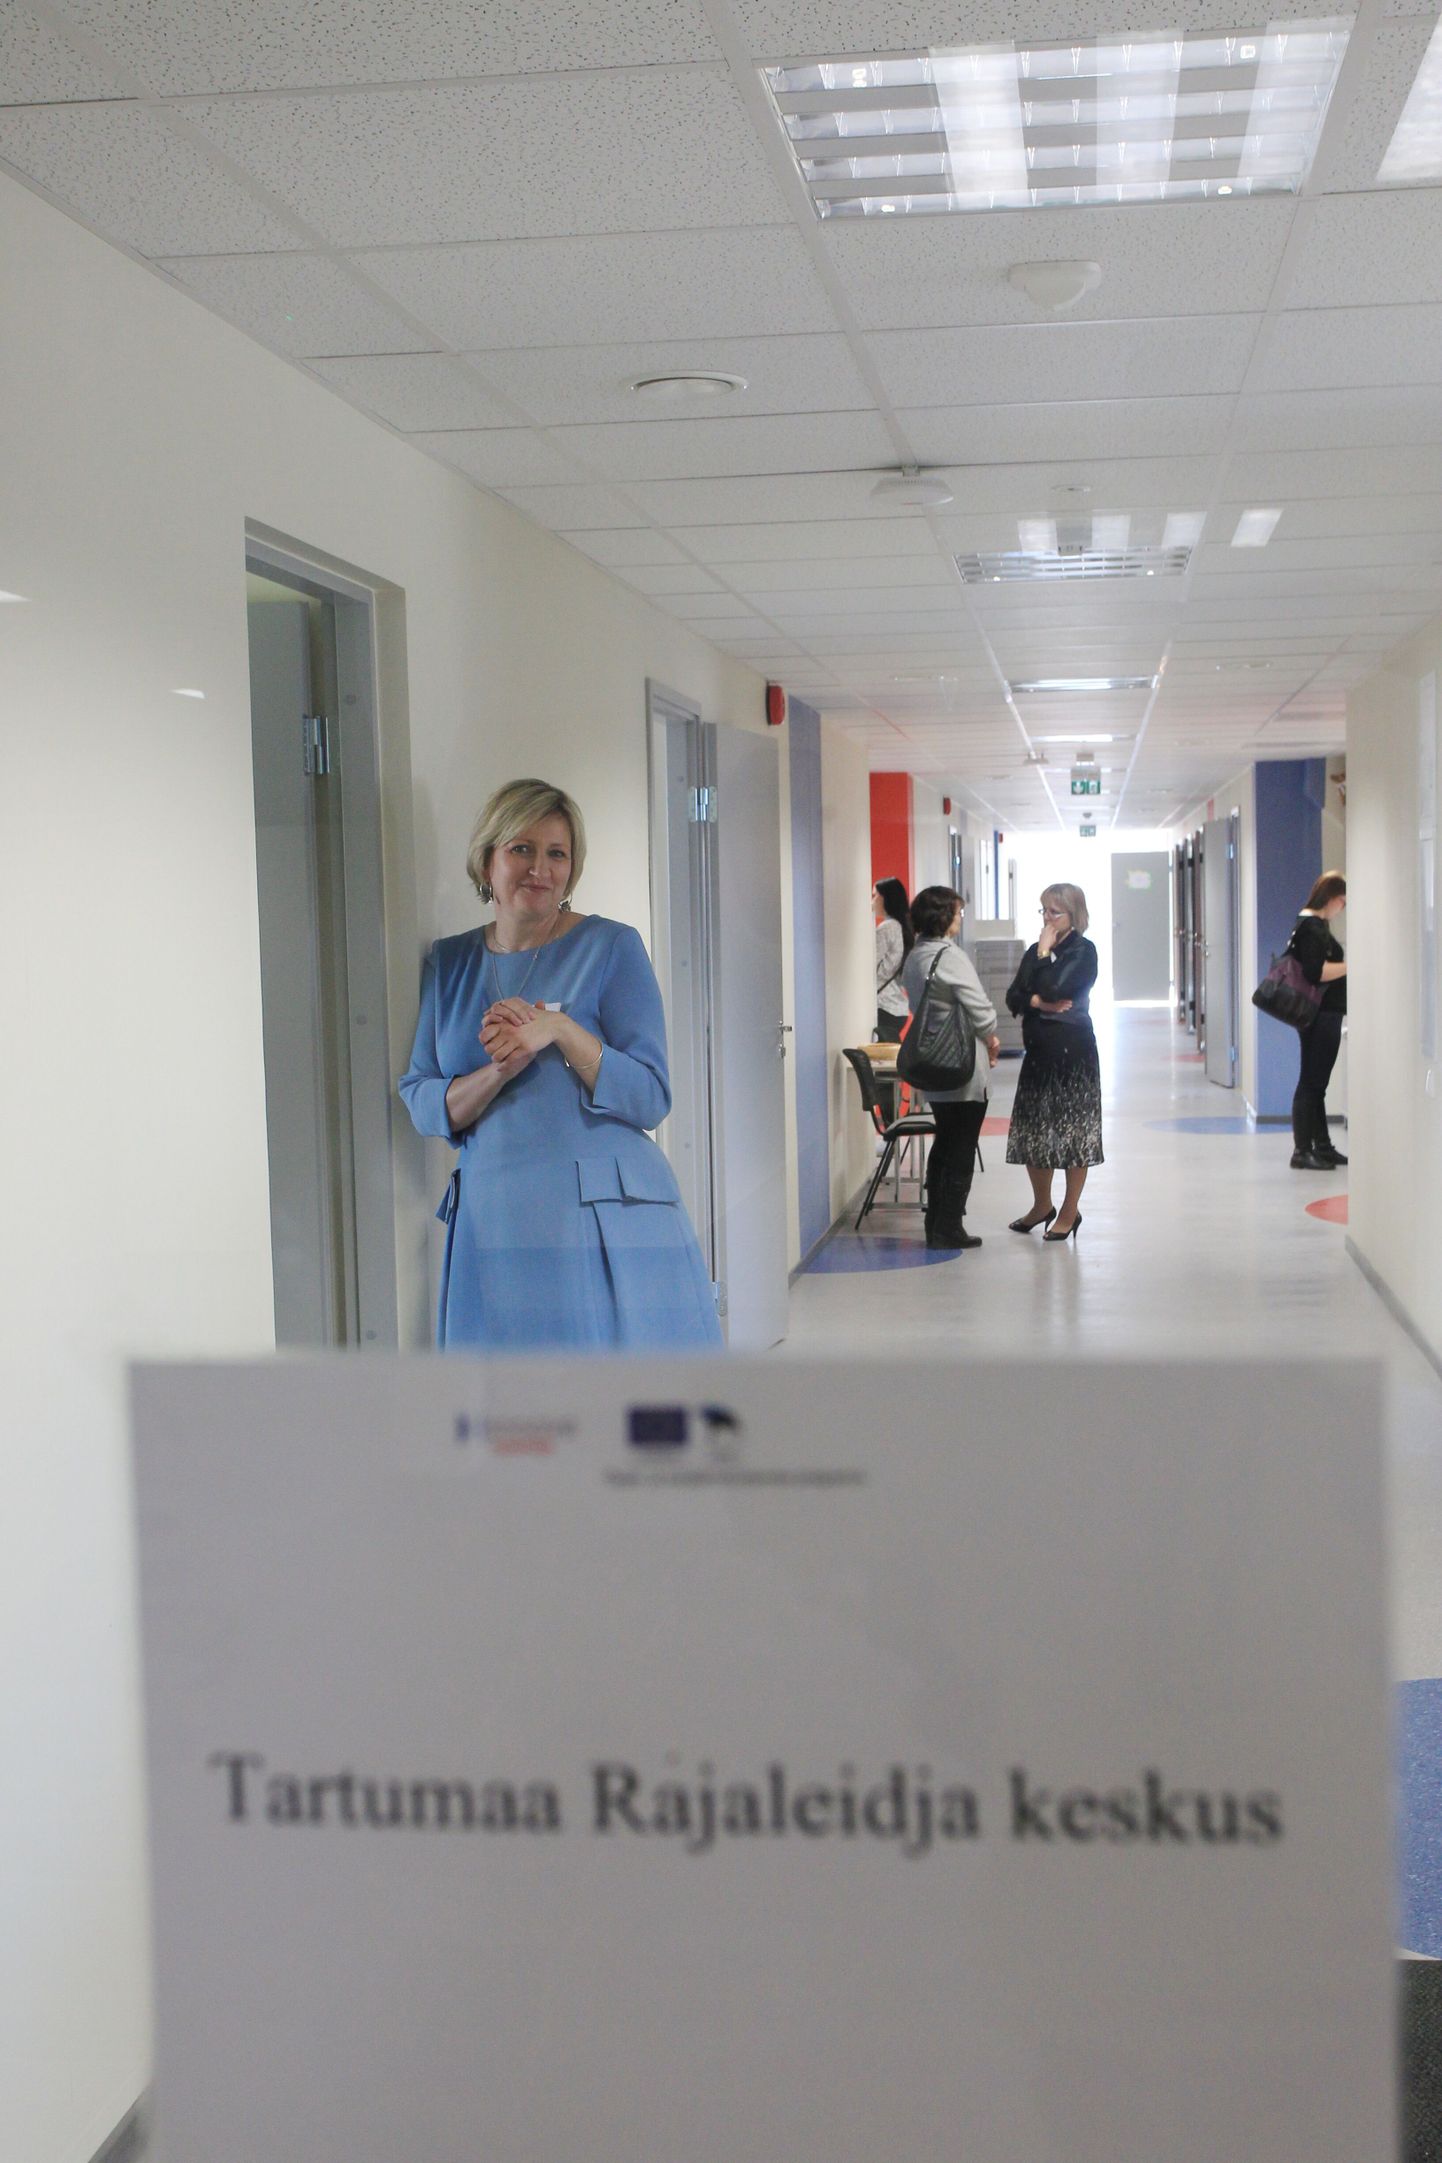 Tartumaa Rajaleidja keskuse juhataja Piret Tatunts on uute ruumidega rahul ning ta loodab, et asutus jätkab samas kohas ka pärast viieaastase rendilepingu lõppemist.